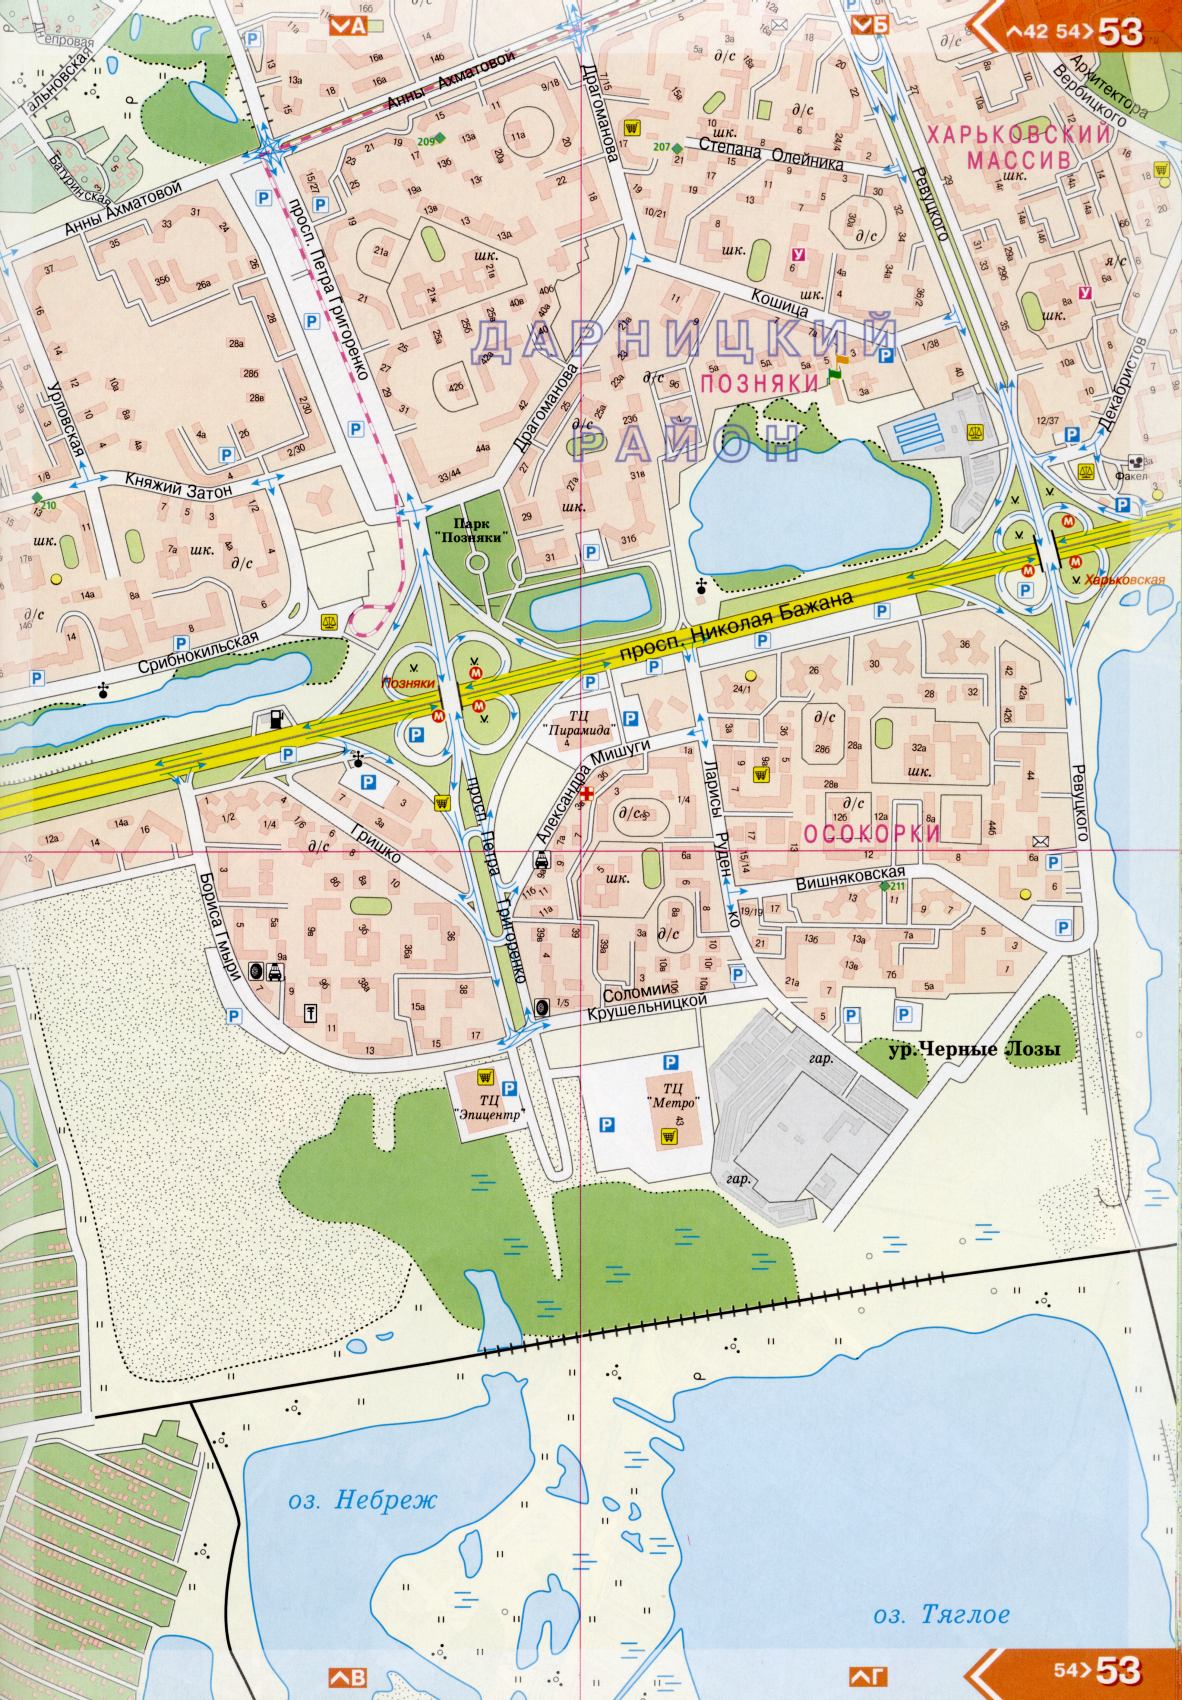 Kiew Karte Details 1cm = 150m für 45 Blatt. Karte von Kiew aus dem Atlas von Autobahnen. Laden Sie eine detaillierte Karte, I4